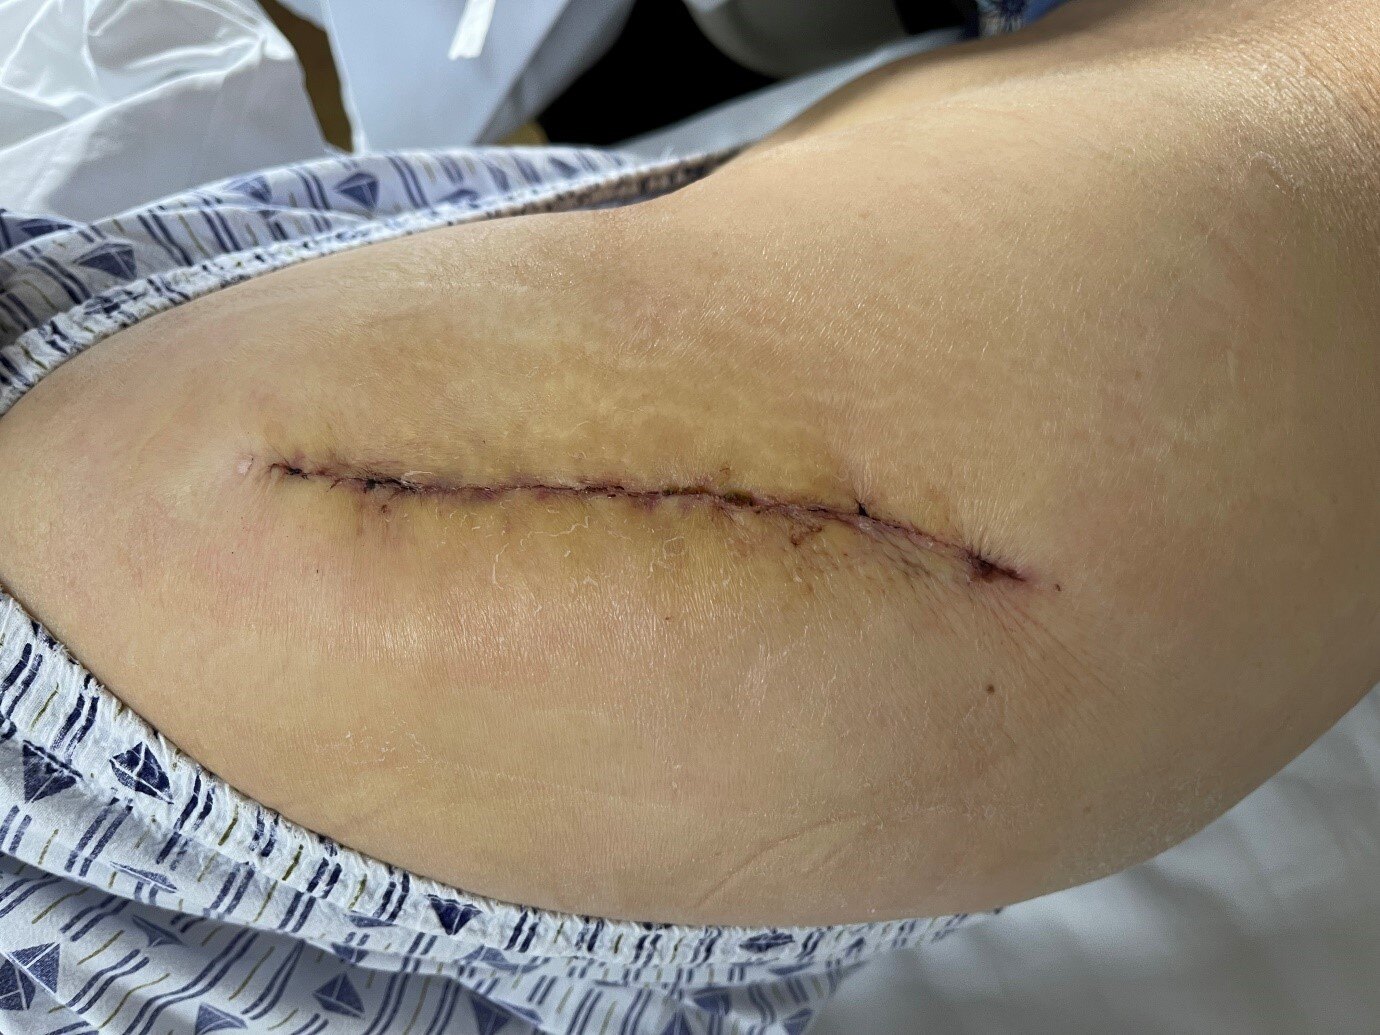 置换术后第3天拍片复查图9 术后第6个月的伤口恢复情况伤口愈合良好